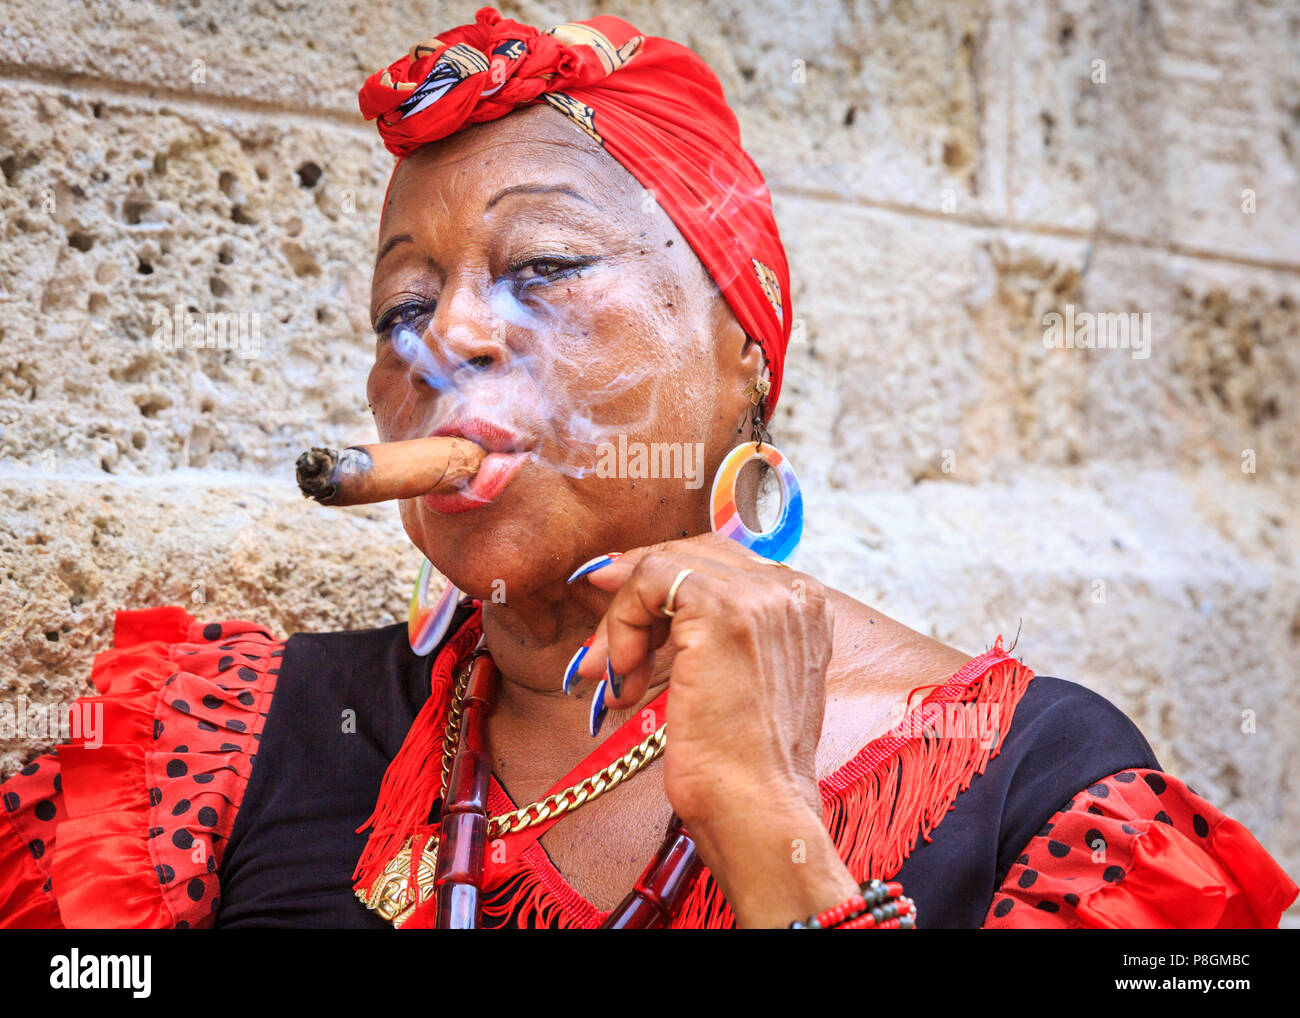 Donna cubana di fumare un sigaro, in abito tradizionale, guarda la fotocamera, ritratto, Havana, Cuba Foto Stock